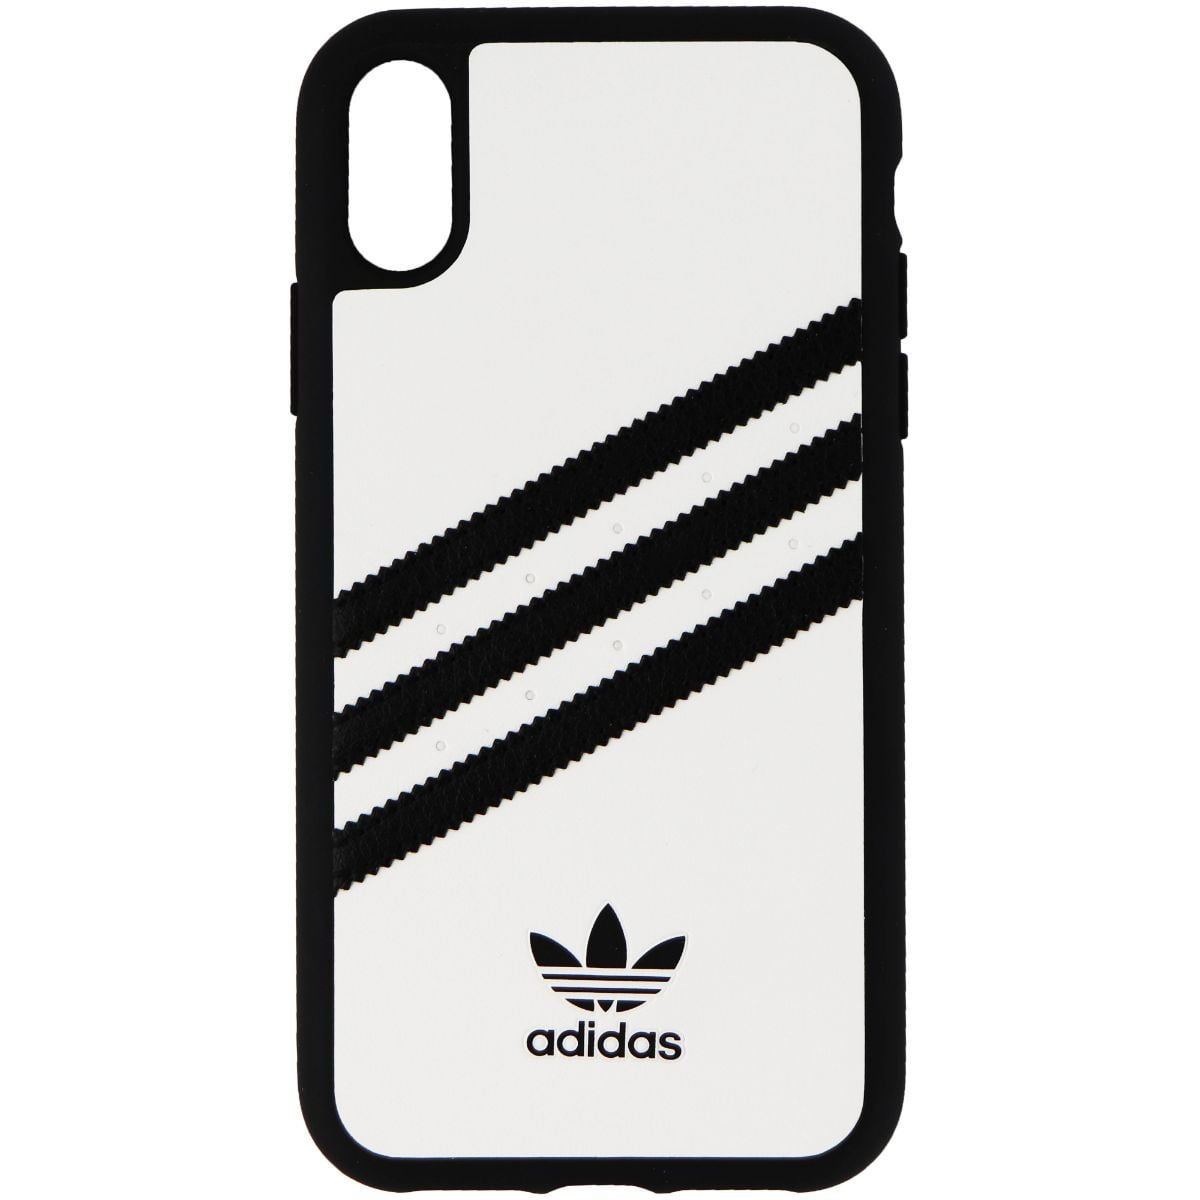 Adidas Originals Samba Snap Case For Iphone Xr White W Black Stripes Walmart Com Walmart Com